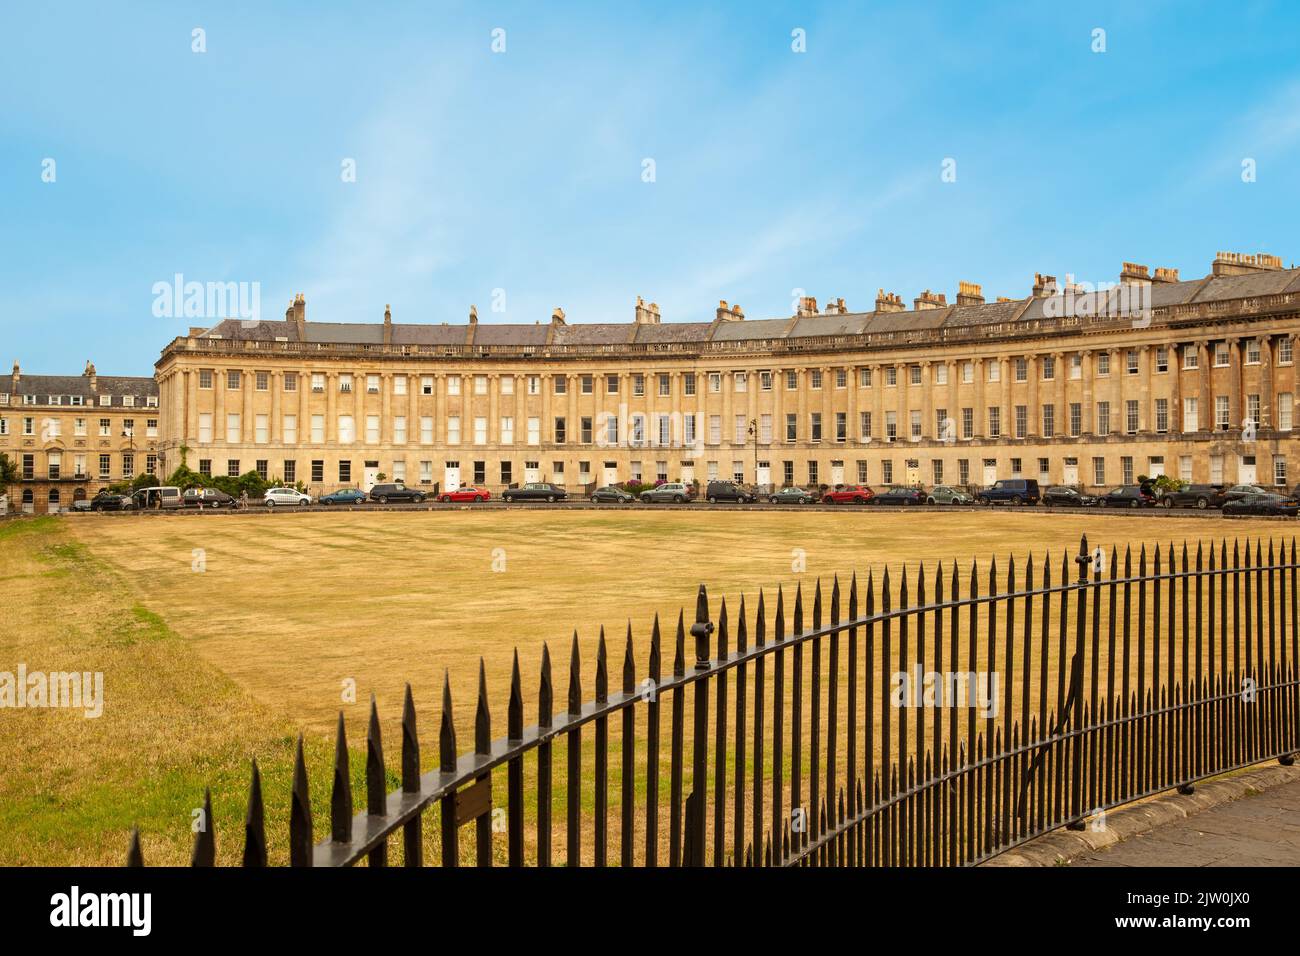 La Mezzaluna reale nella città inglese di Bath una crescente mezzaluna di case costruite nel between1767 e 1774, visto durante la siccità e l'ondata di caldo del 2022 Foto Stock